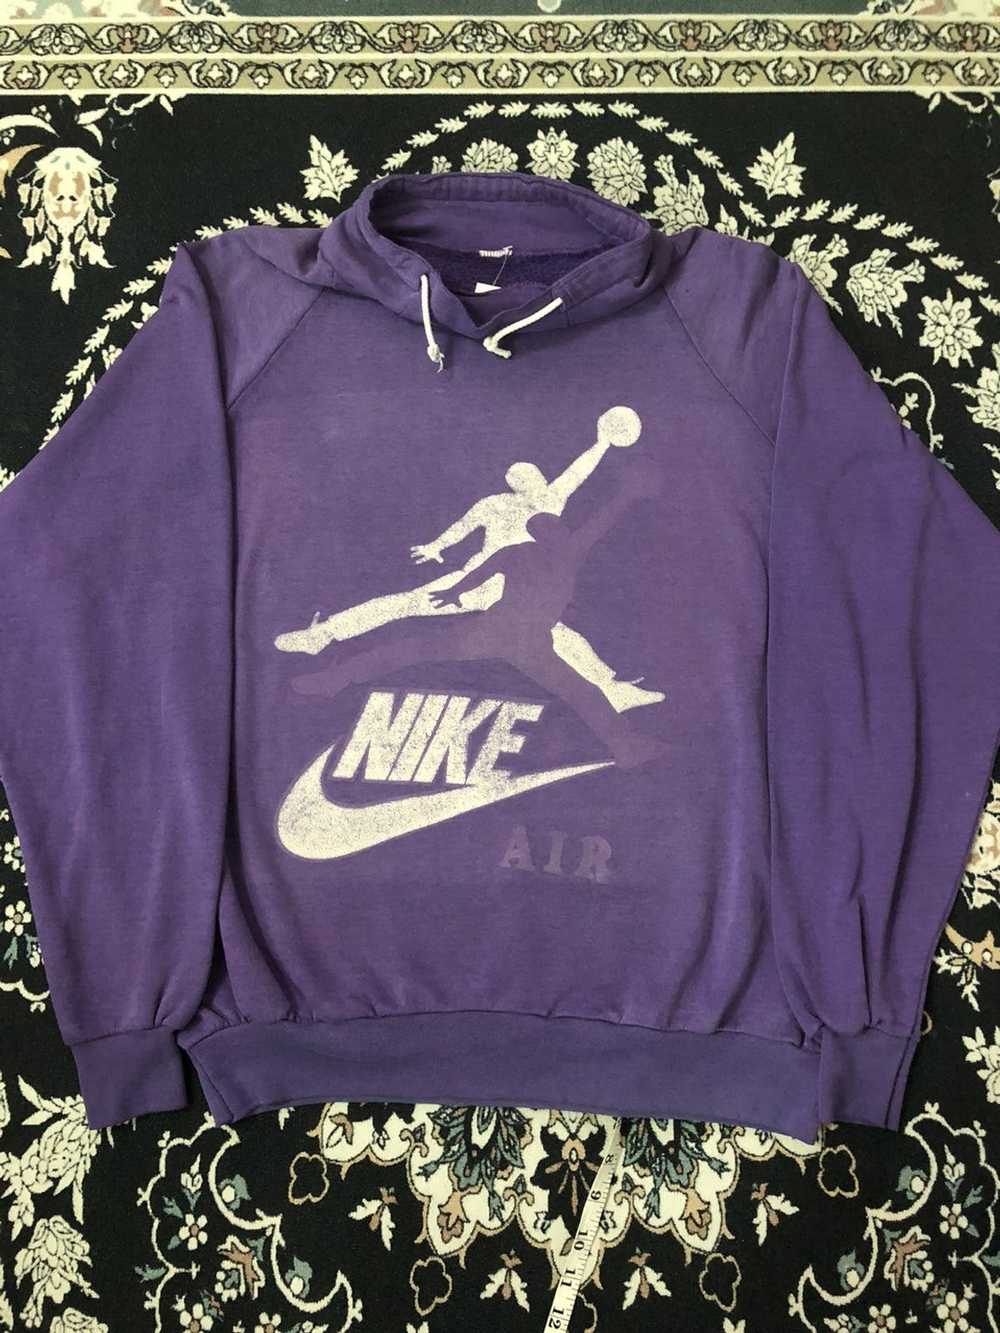 Vintage Nike vintage 90’s bootleg sweatshirt - image 1